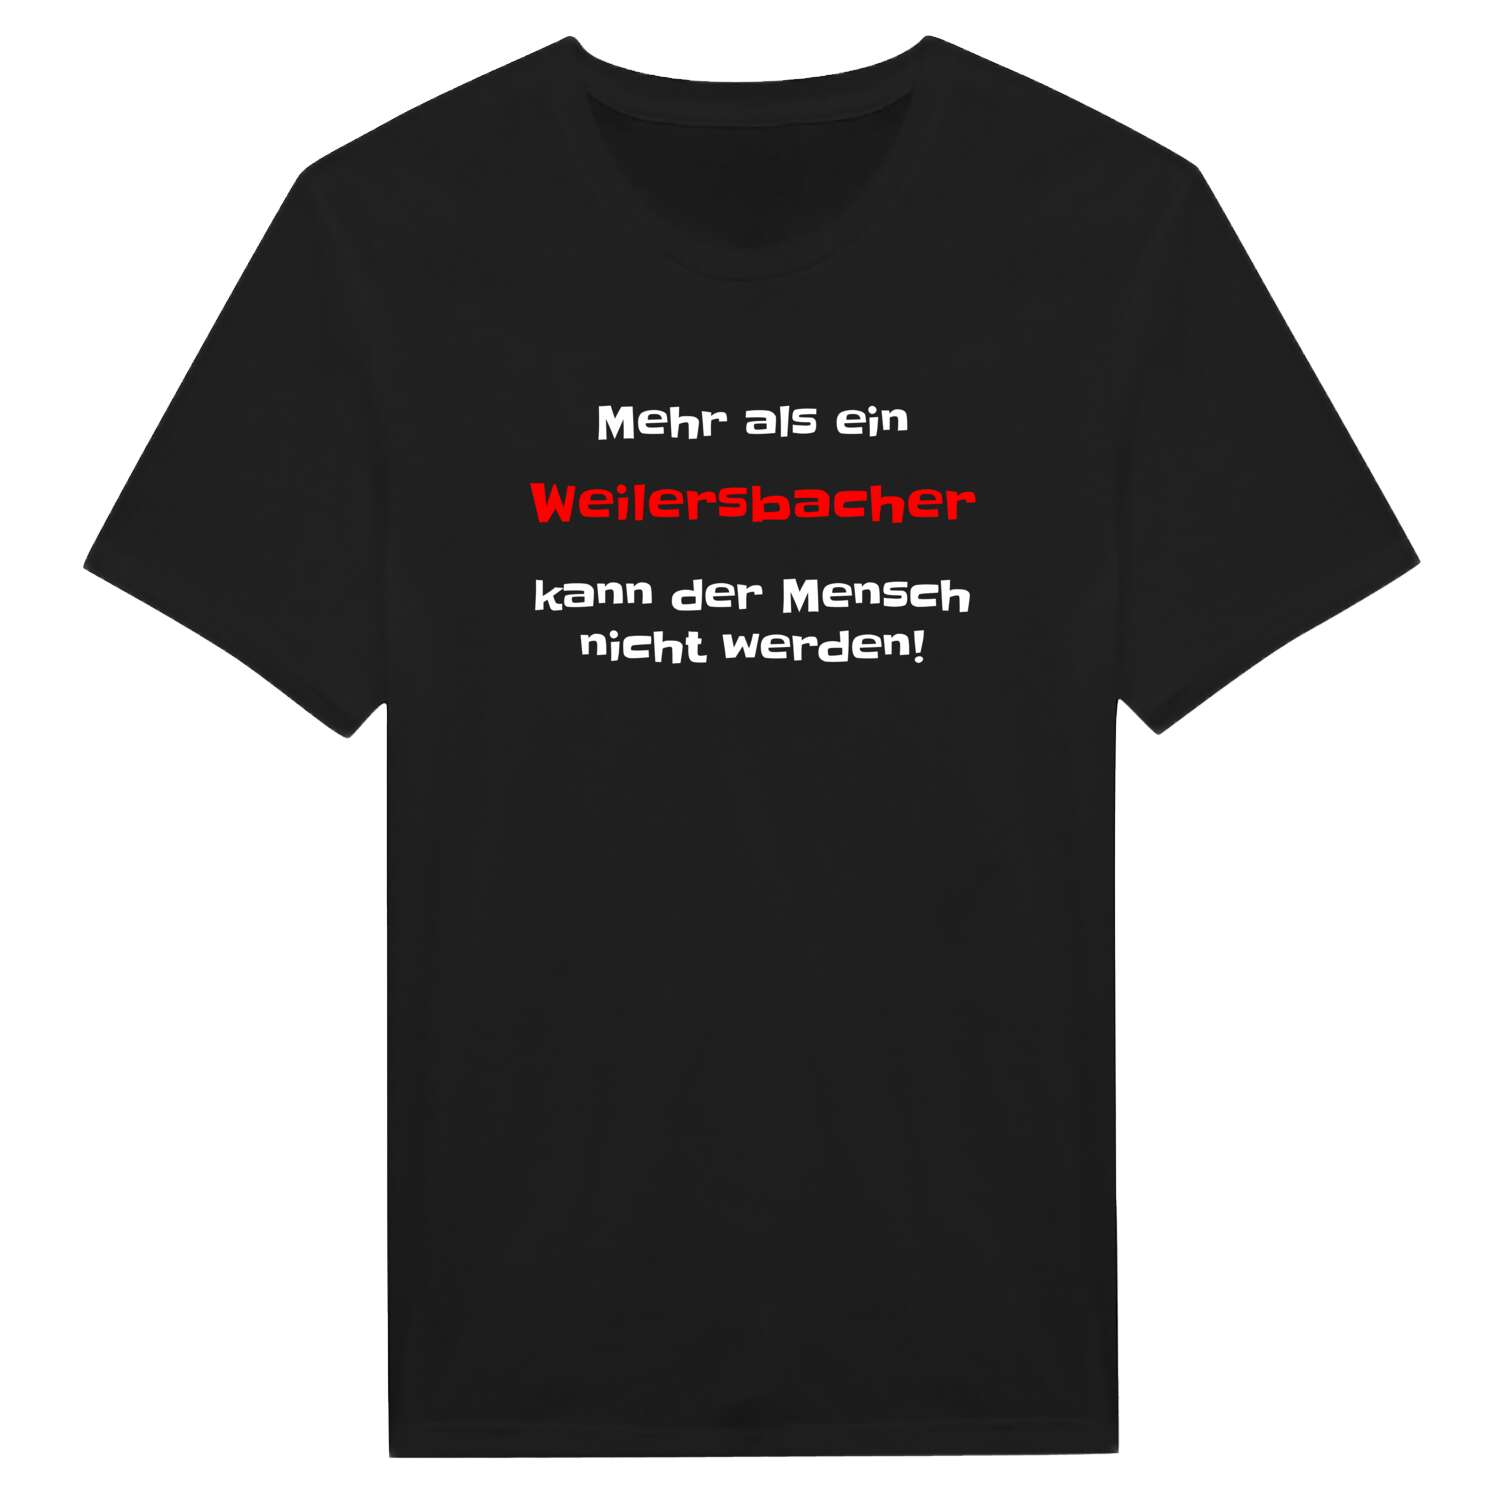 Weilersbach T-Shirt »Mehr als ein«